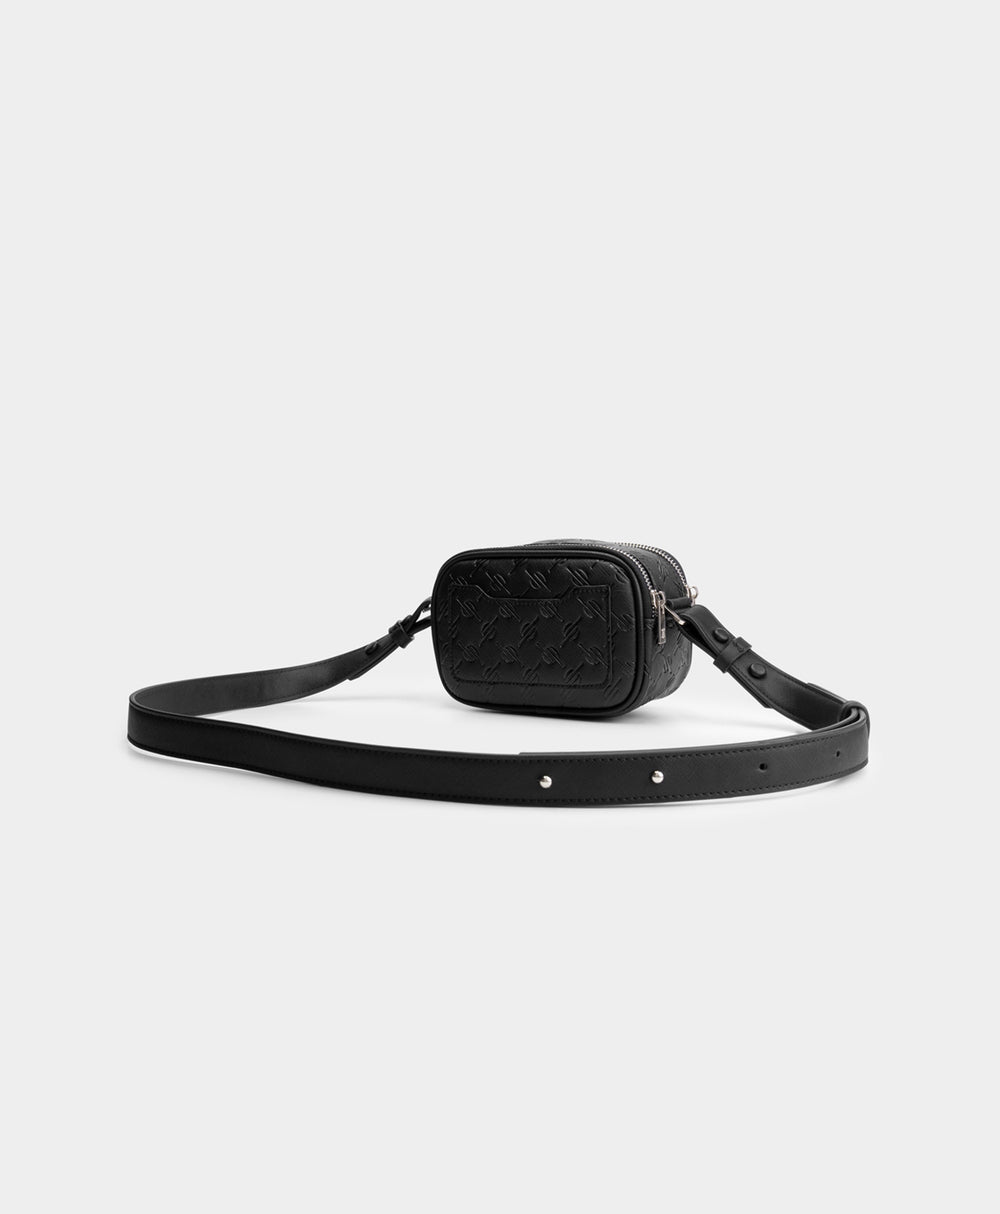 DP - Black May Monogram Bag - Packshot - Rear